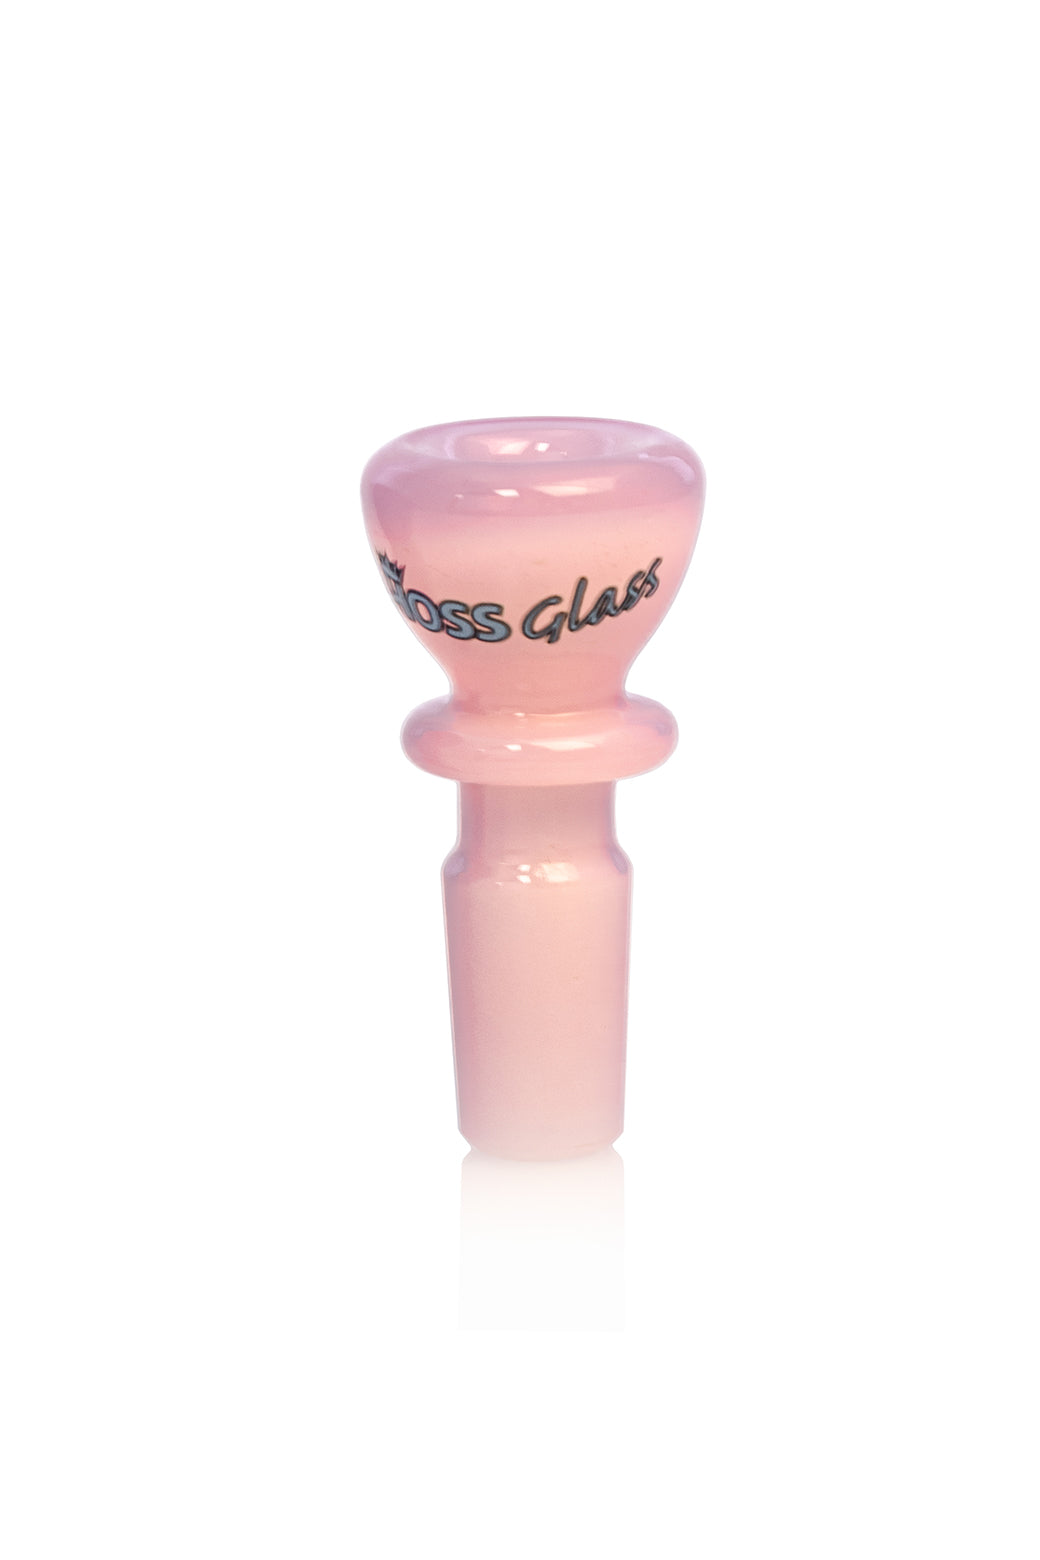 Hoss Glass 14mm Full Colour Chunky Snapper Bowl Milk Pink